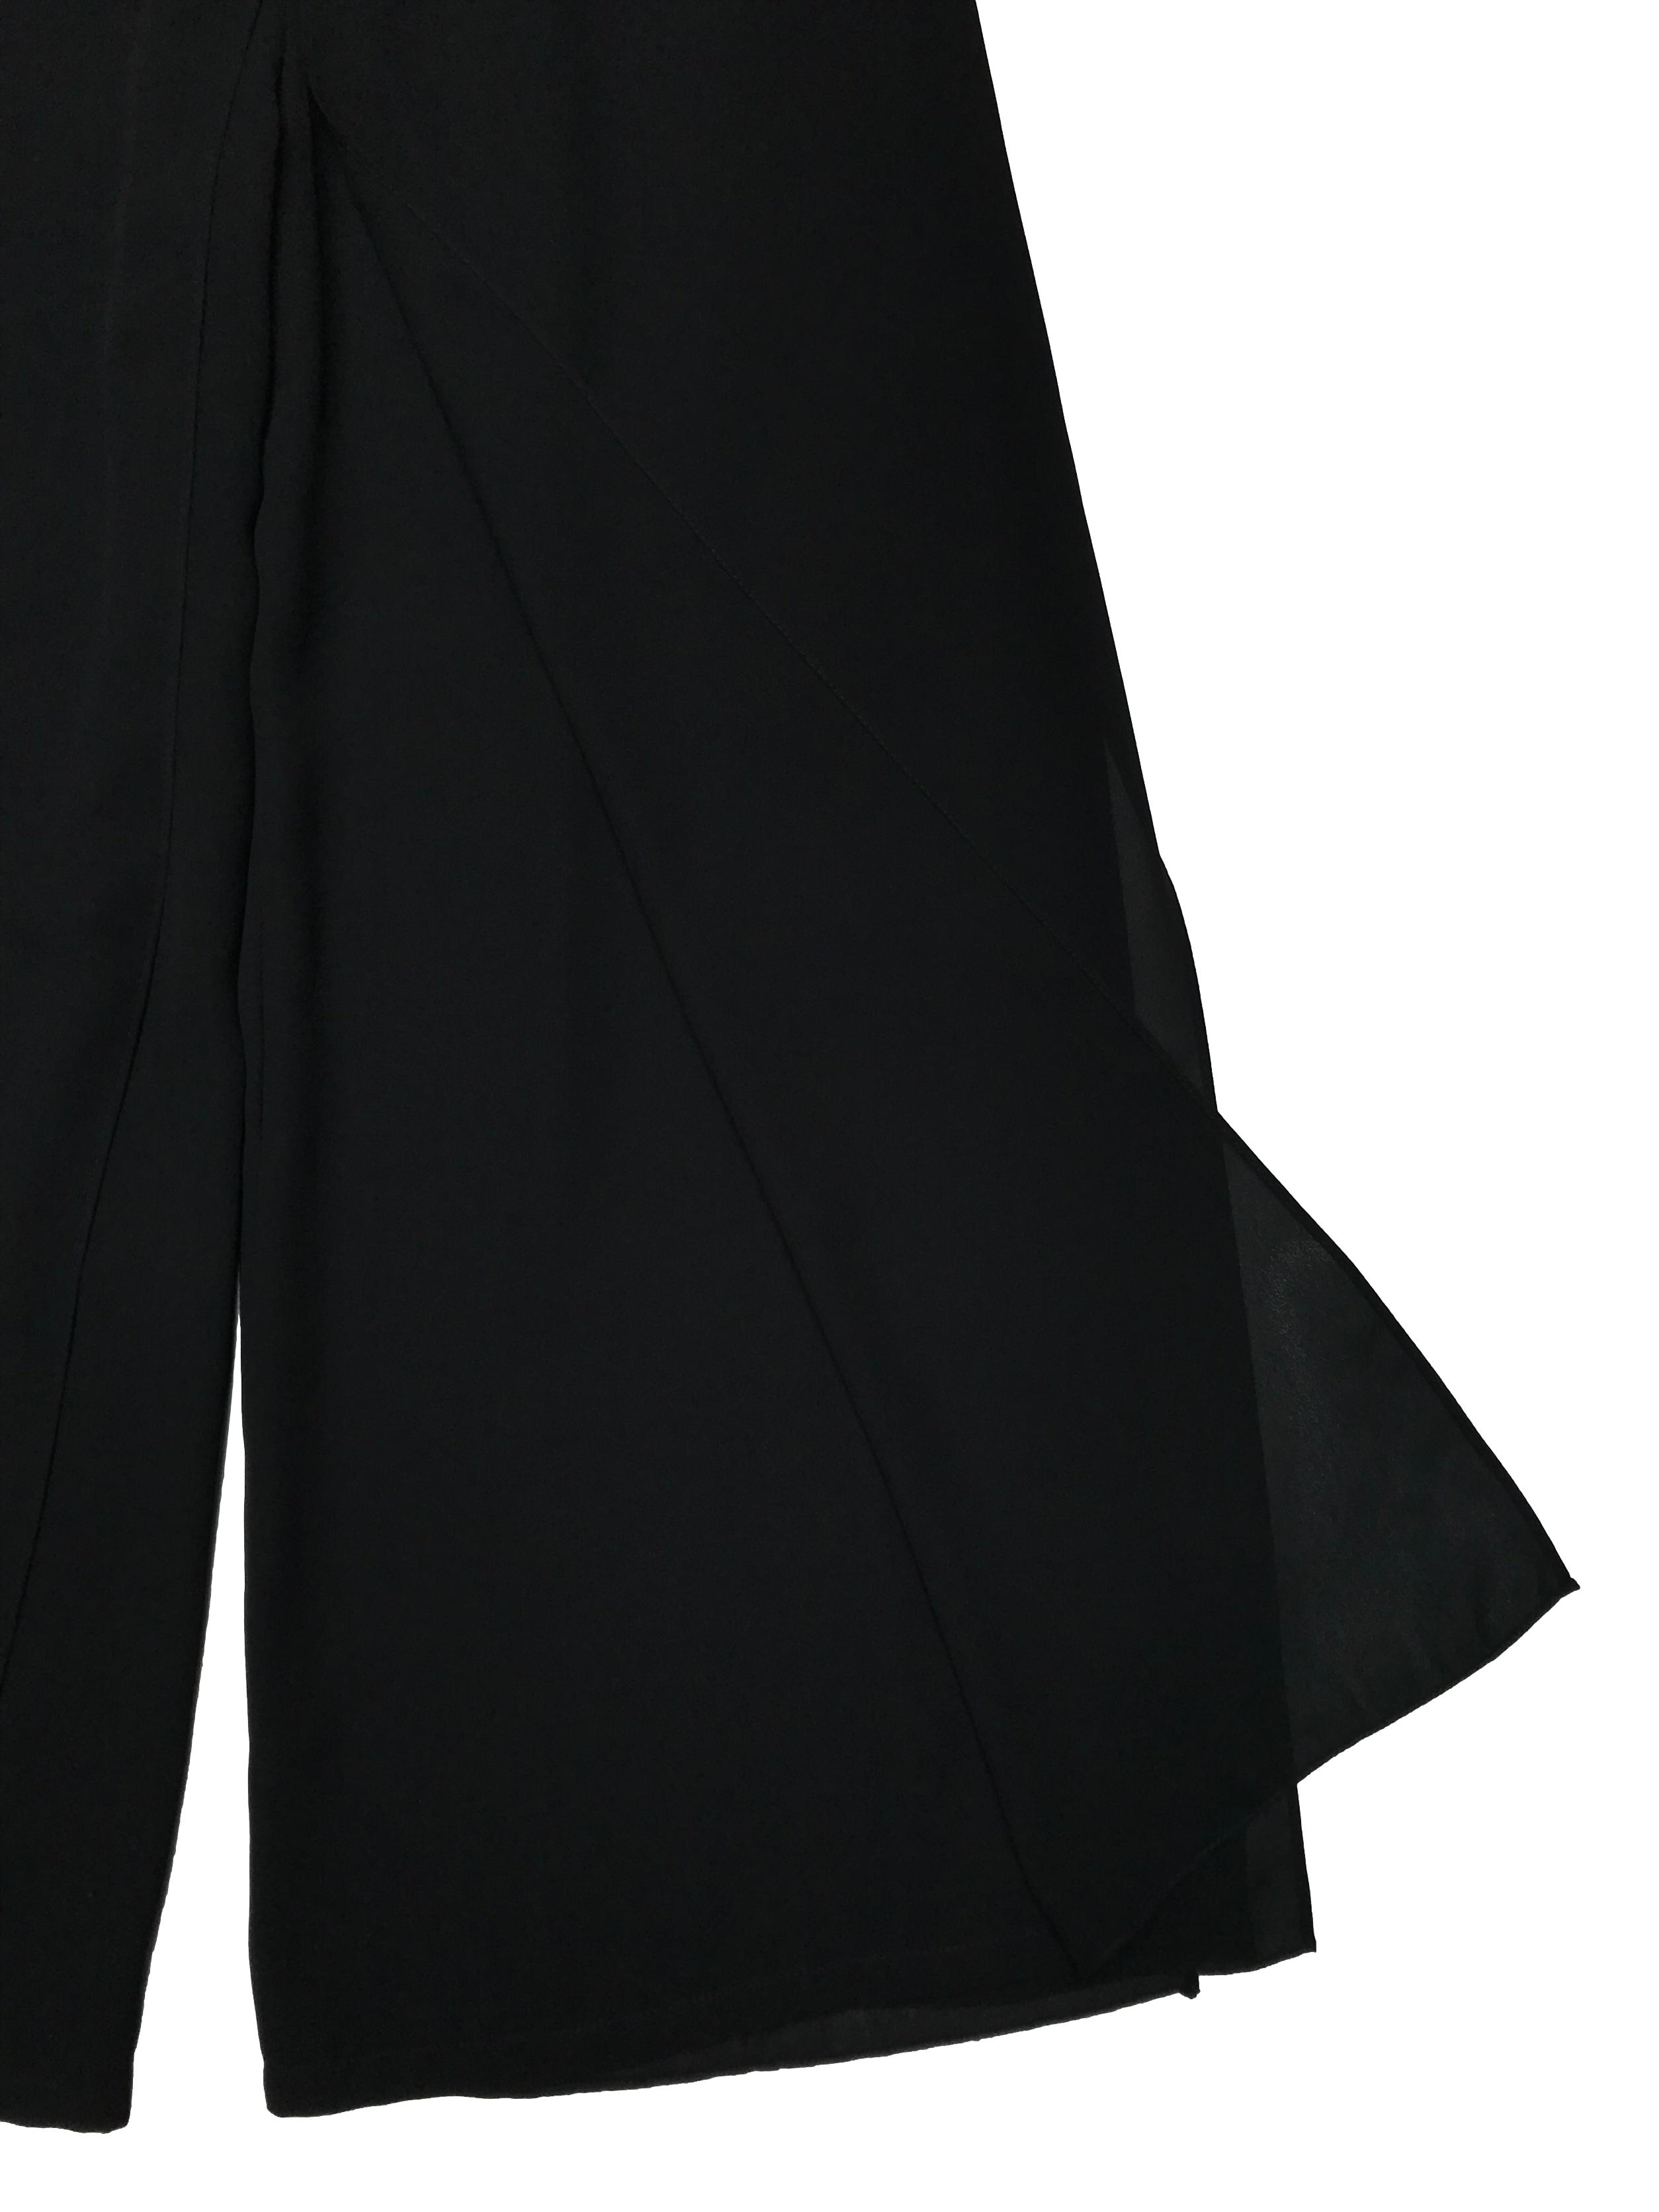 Pantalón Adriana Papell palazzo con capas delanteras y traseras, tela tipo gasa gruesa. tiene pretina elástica. Largo 102cm. Precio original S/ 450